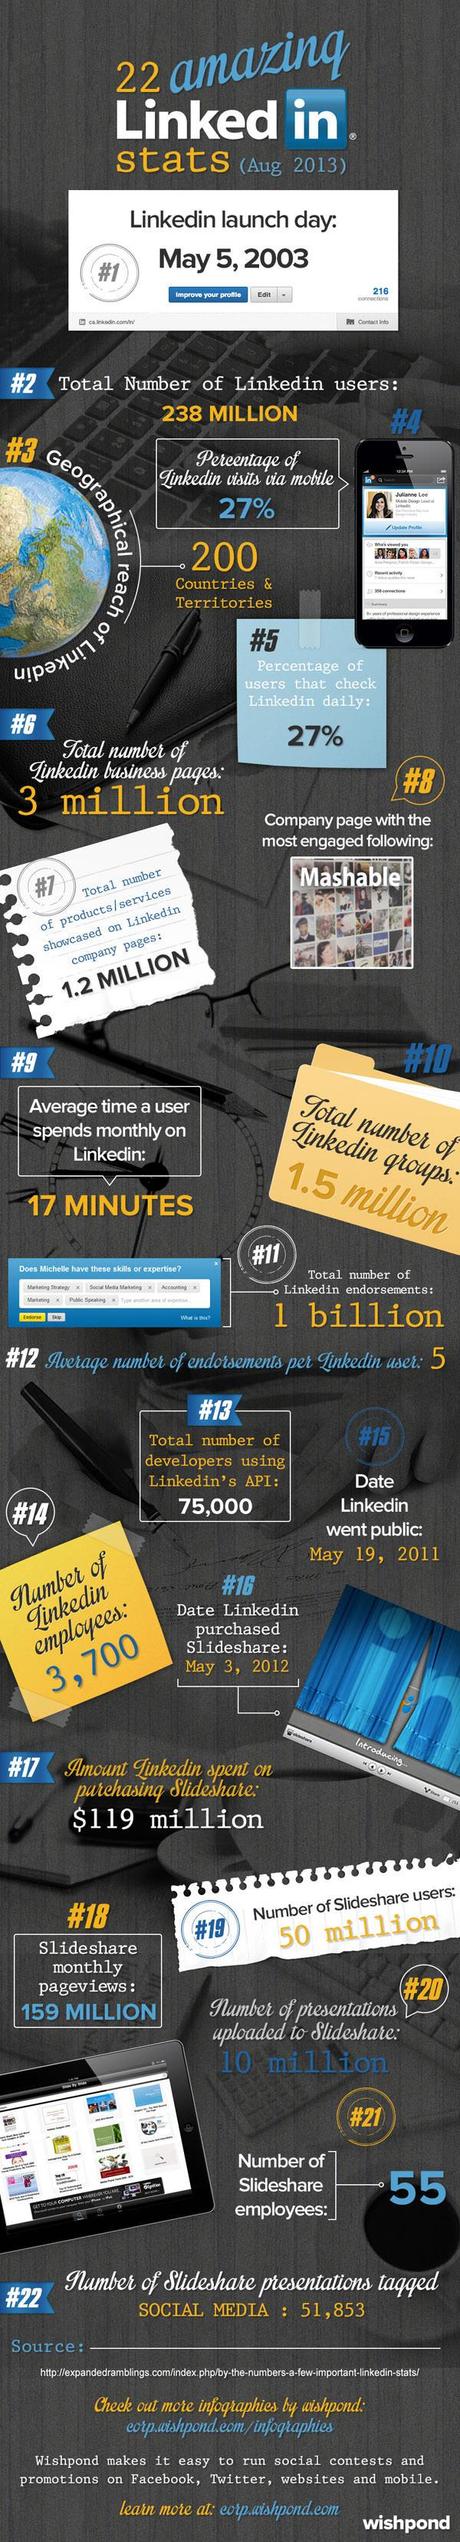 LinkedIn : faits et chiffres 2013